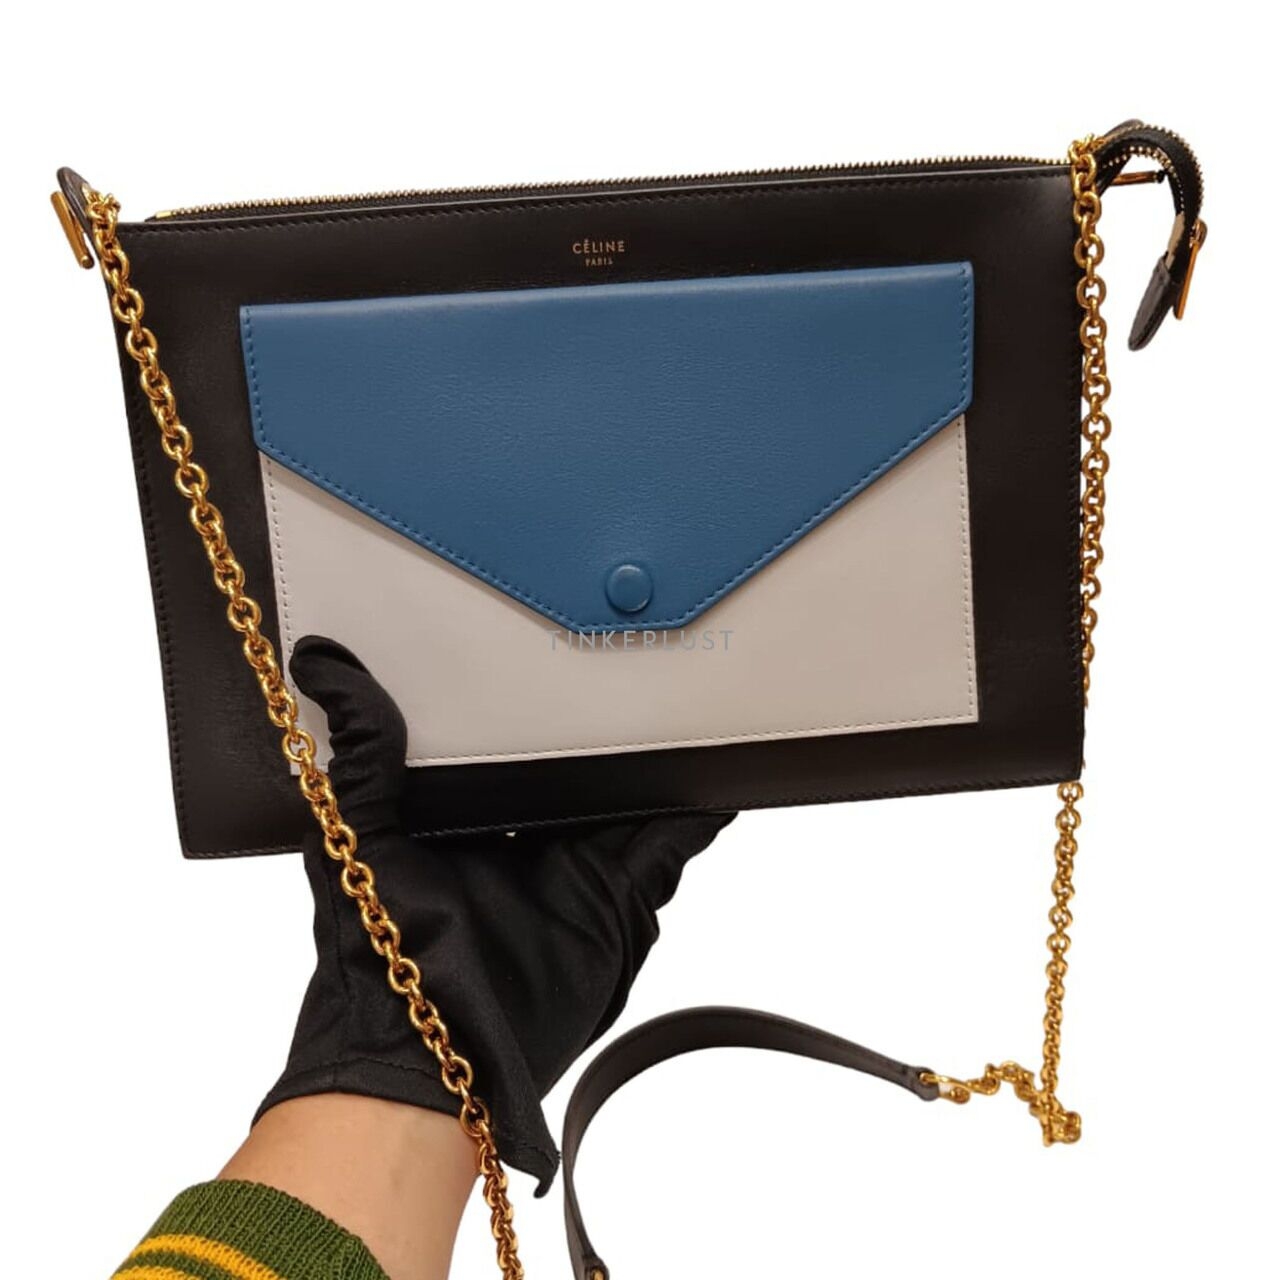 Celine Envelope Clutch Blue & White 2015 Sling Bag